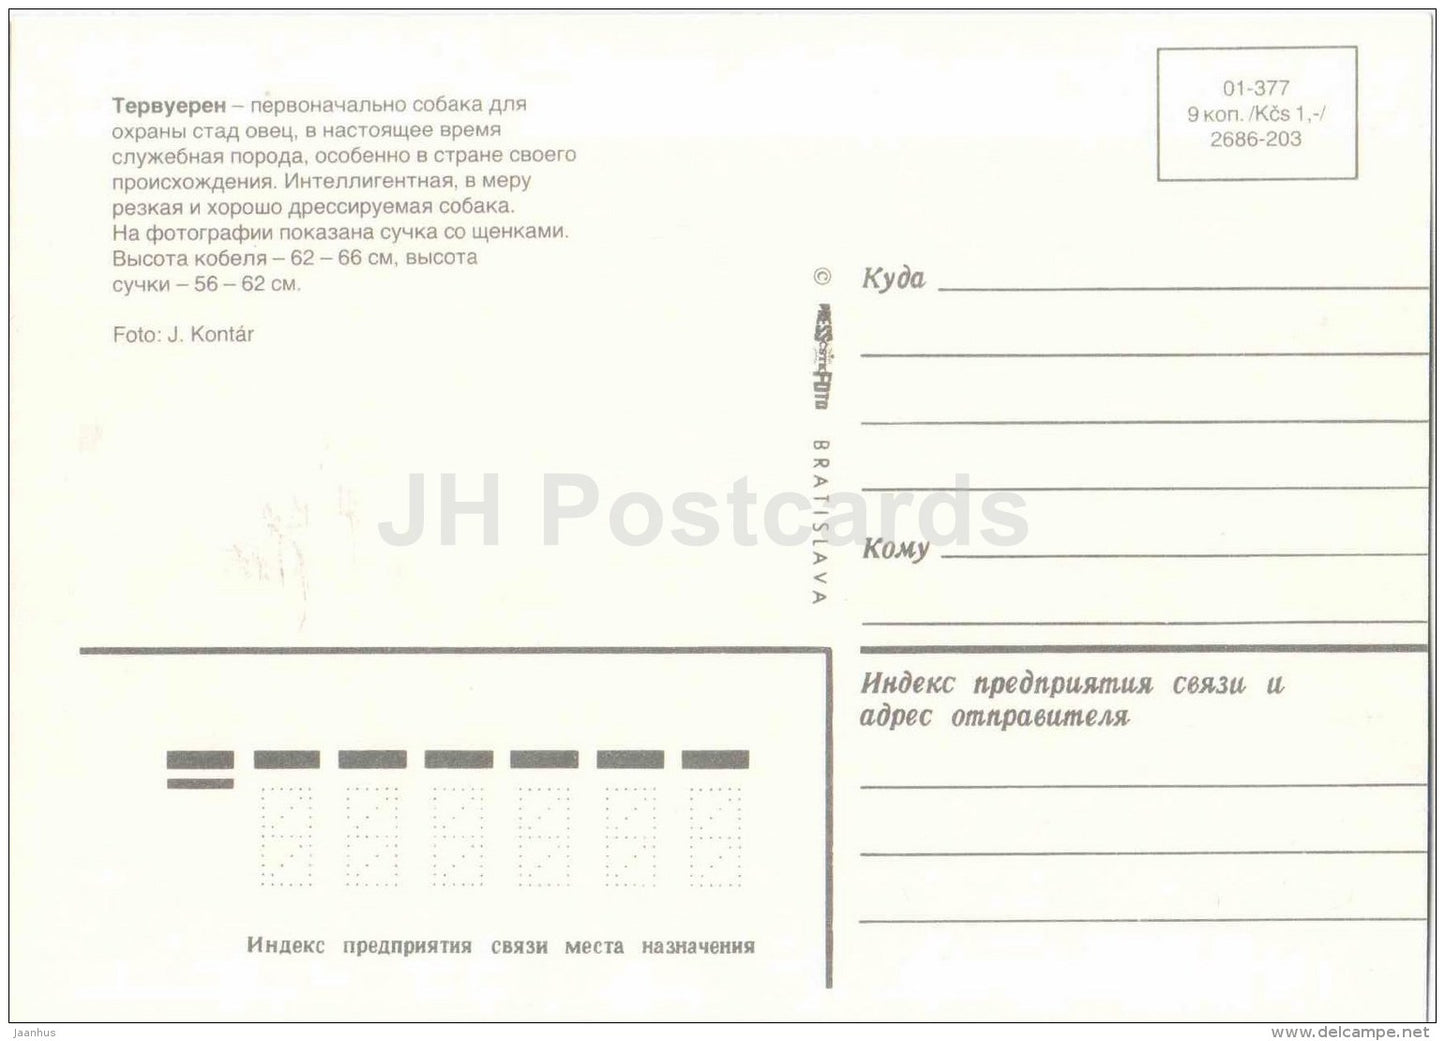 Tervuren - dog - Russia USSR - unused - JH Postcards